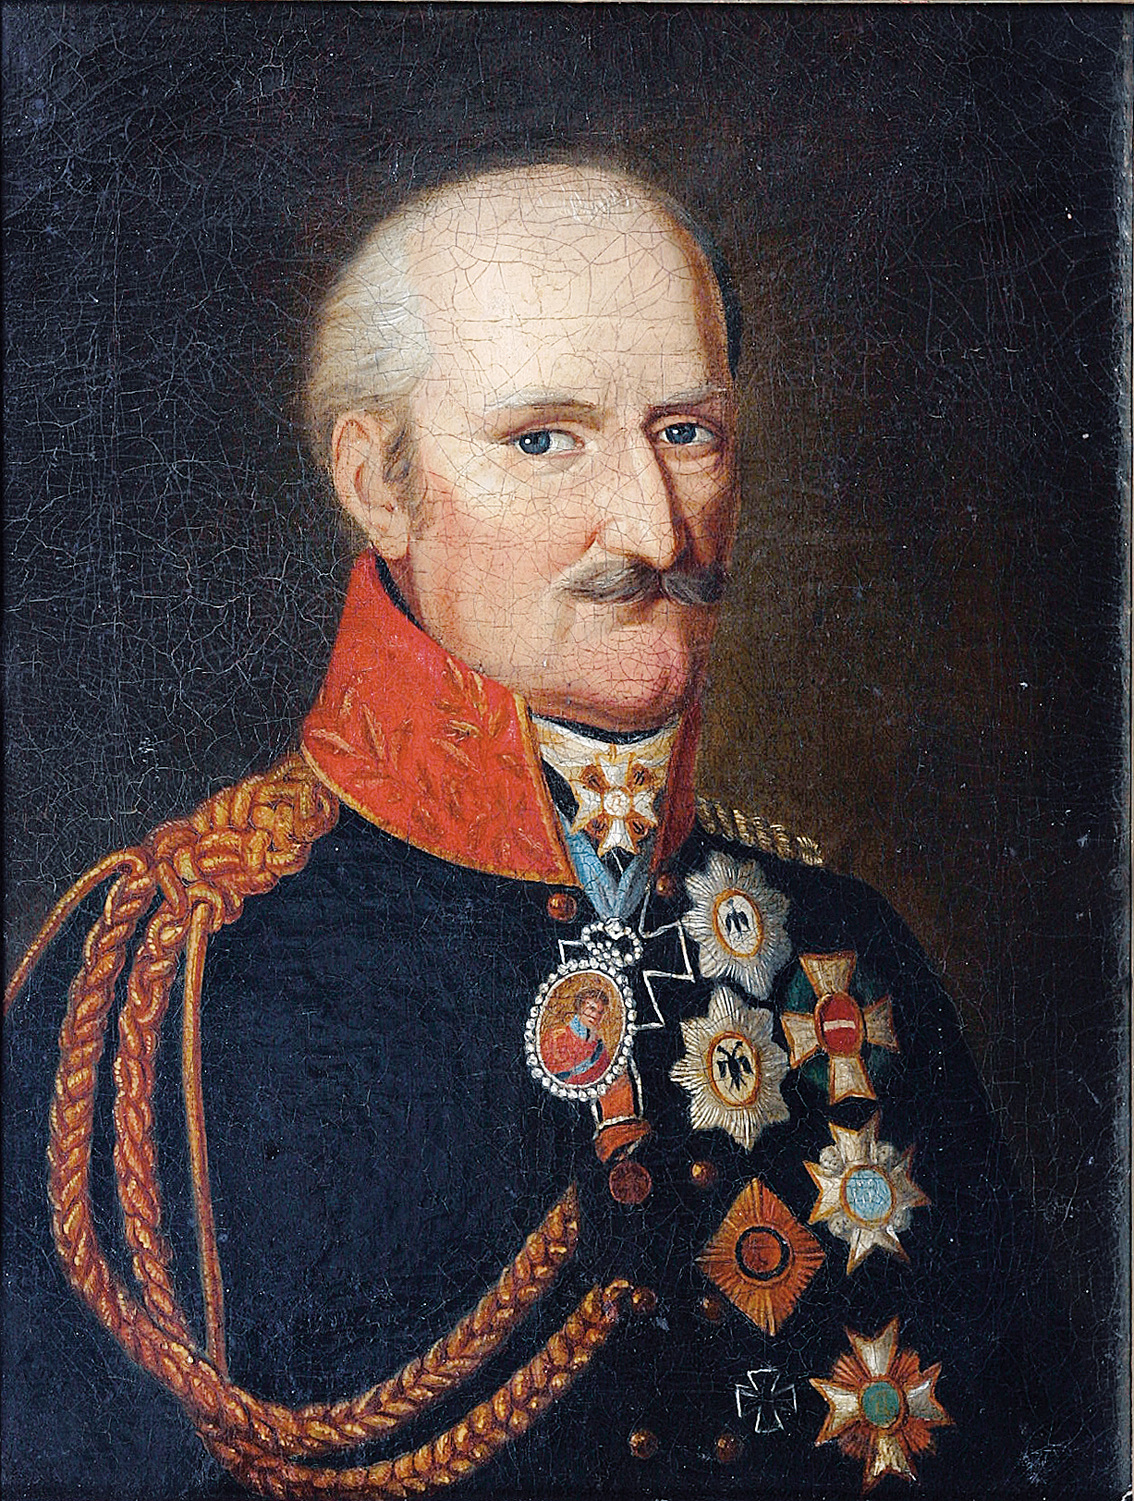 Portrait: Gebhardt Leberecht Fürst Blücher von Wahlstatt (1742-1819)